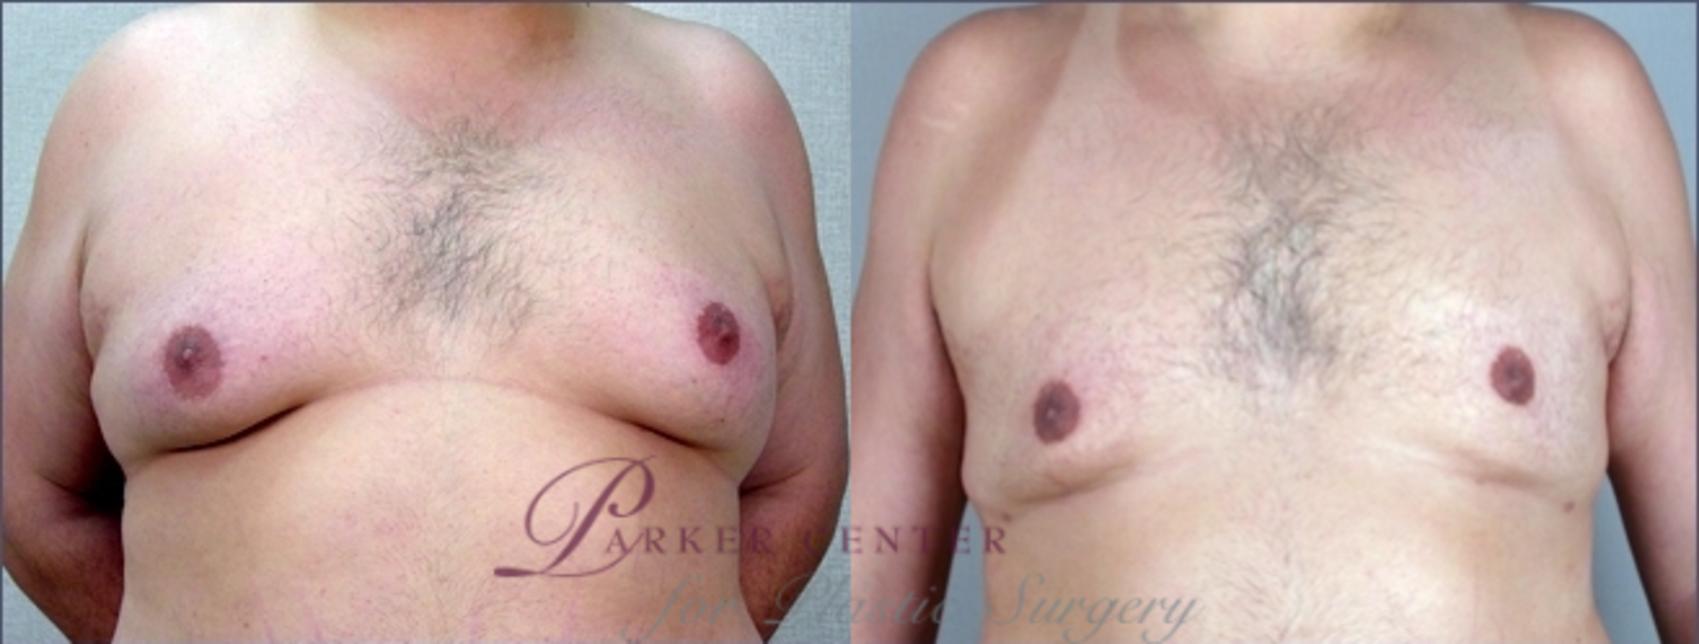 Liposuction Case 942 Before & After View #5 | Paramus, NJ | Parker Center for Plastic Surgery